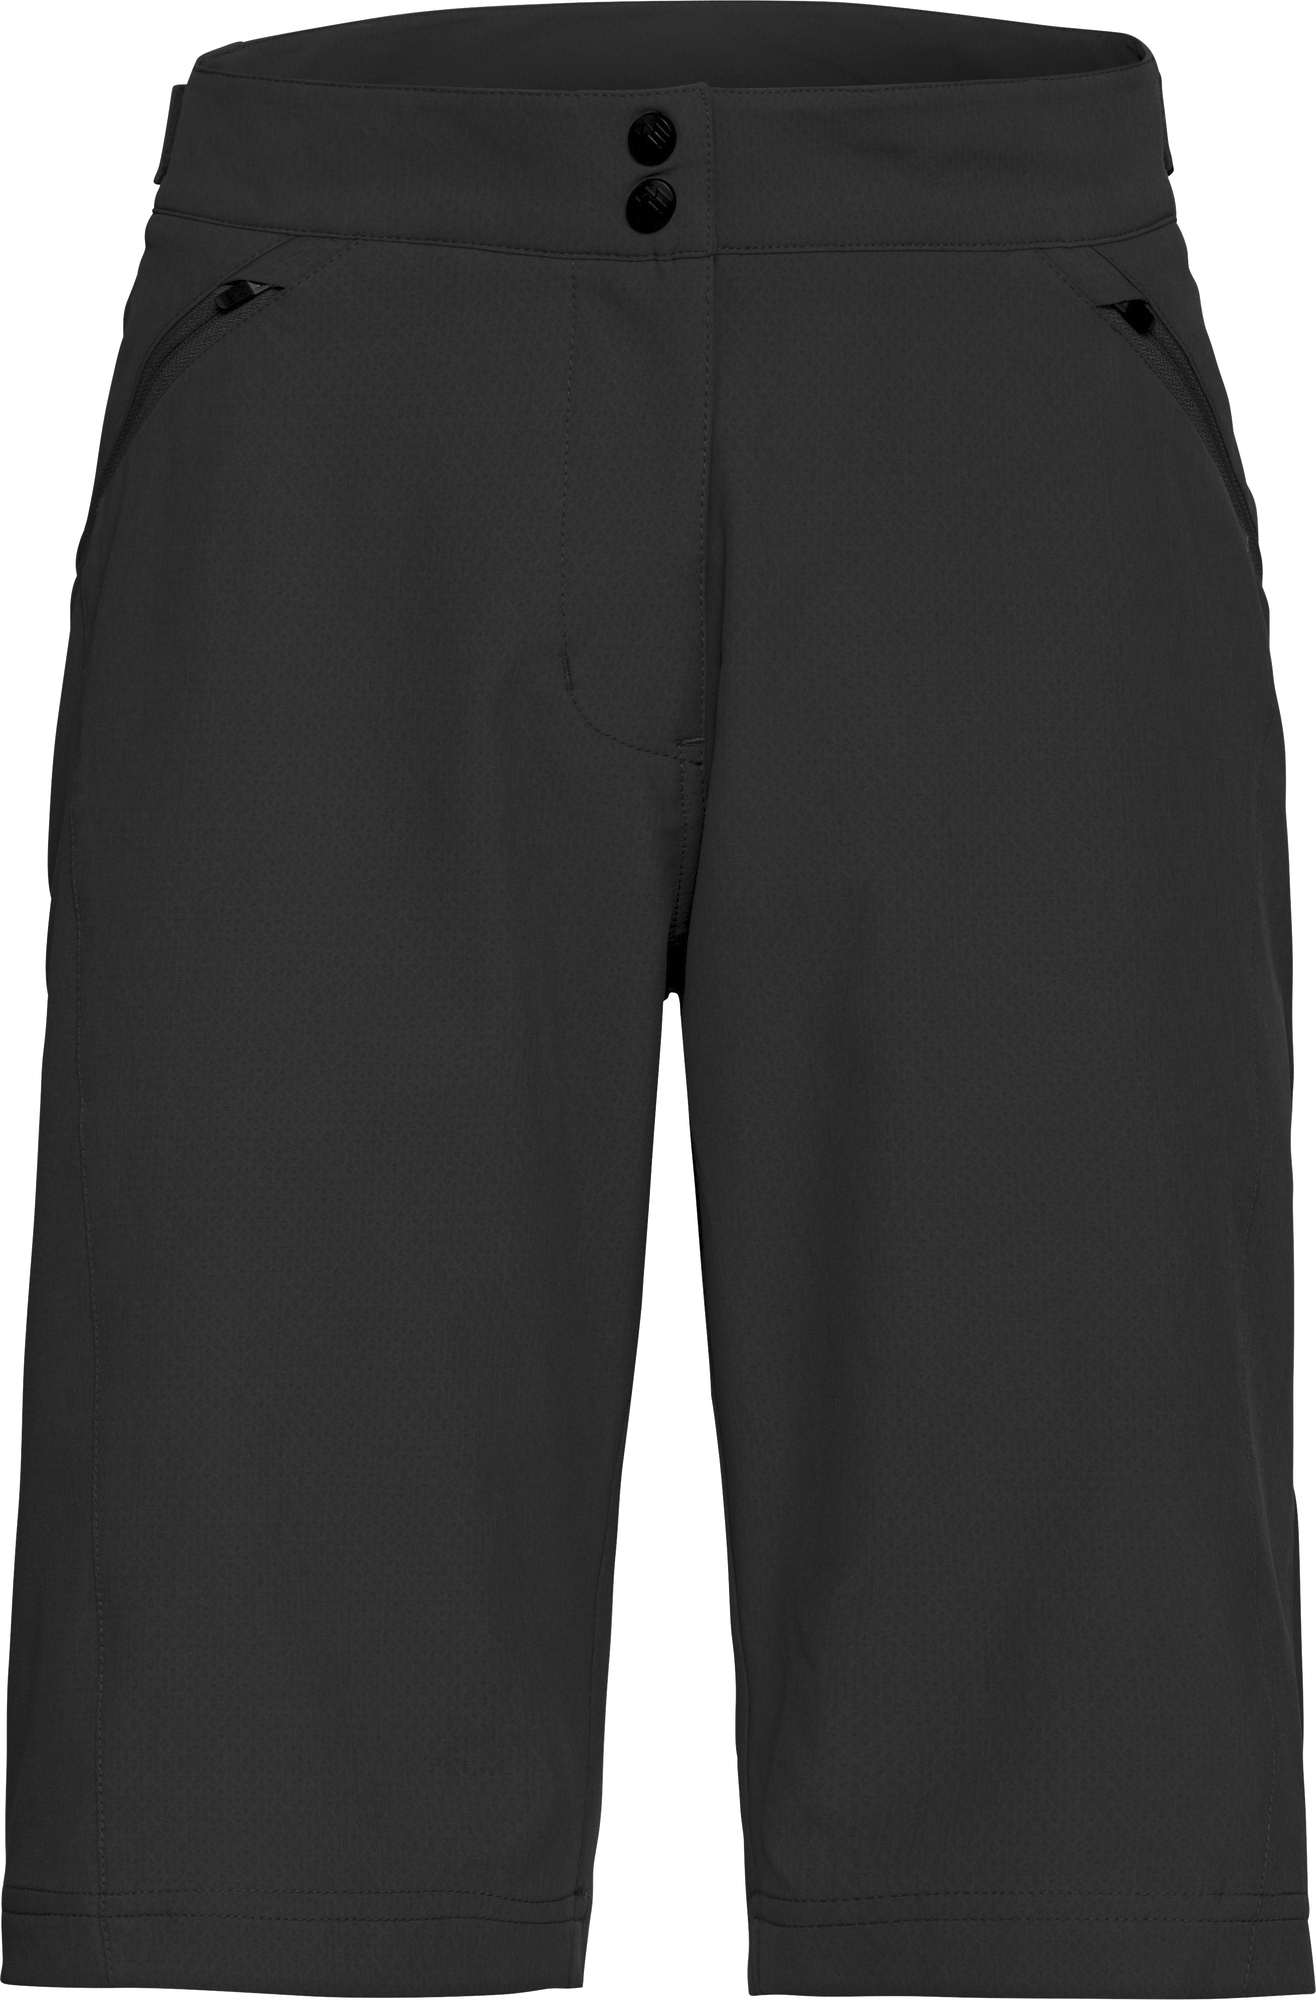 Bekleidung/Hosen: Apura  Damen Shorts Classic L 